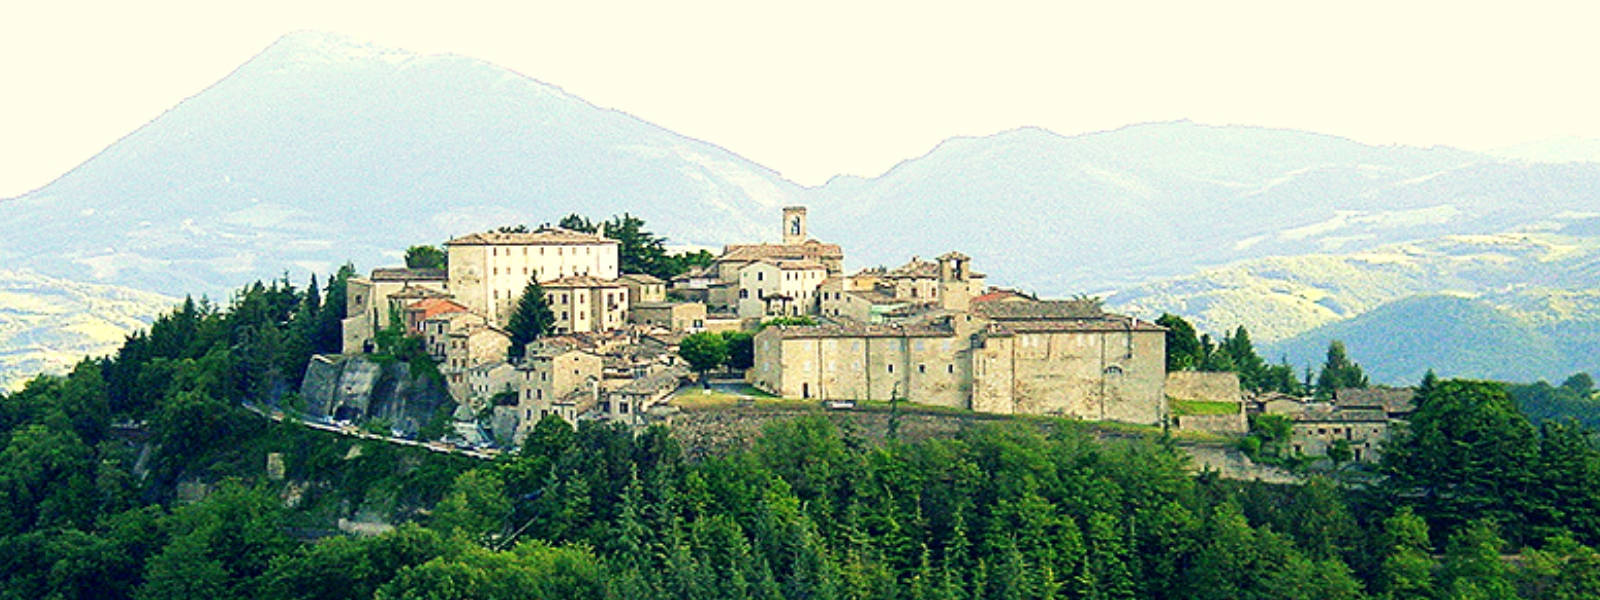 Montone - Perugia